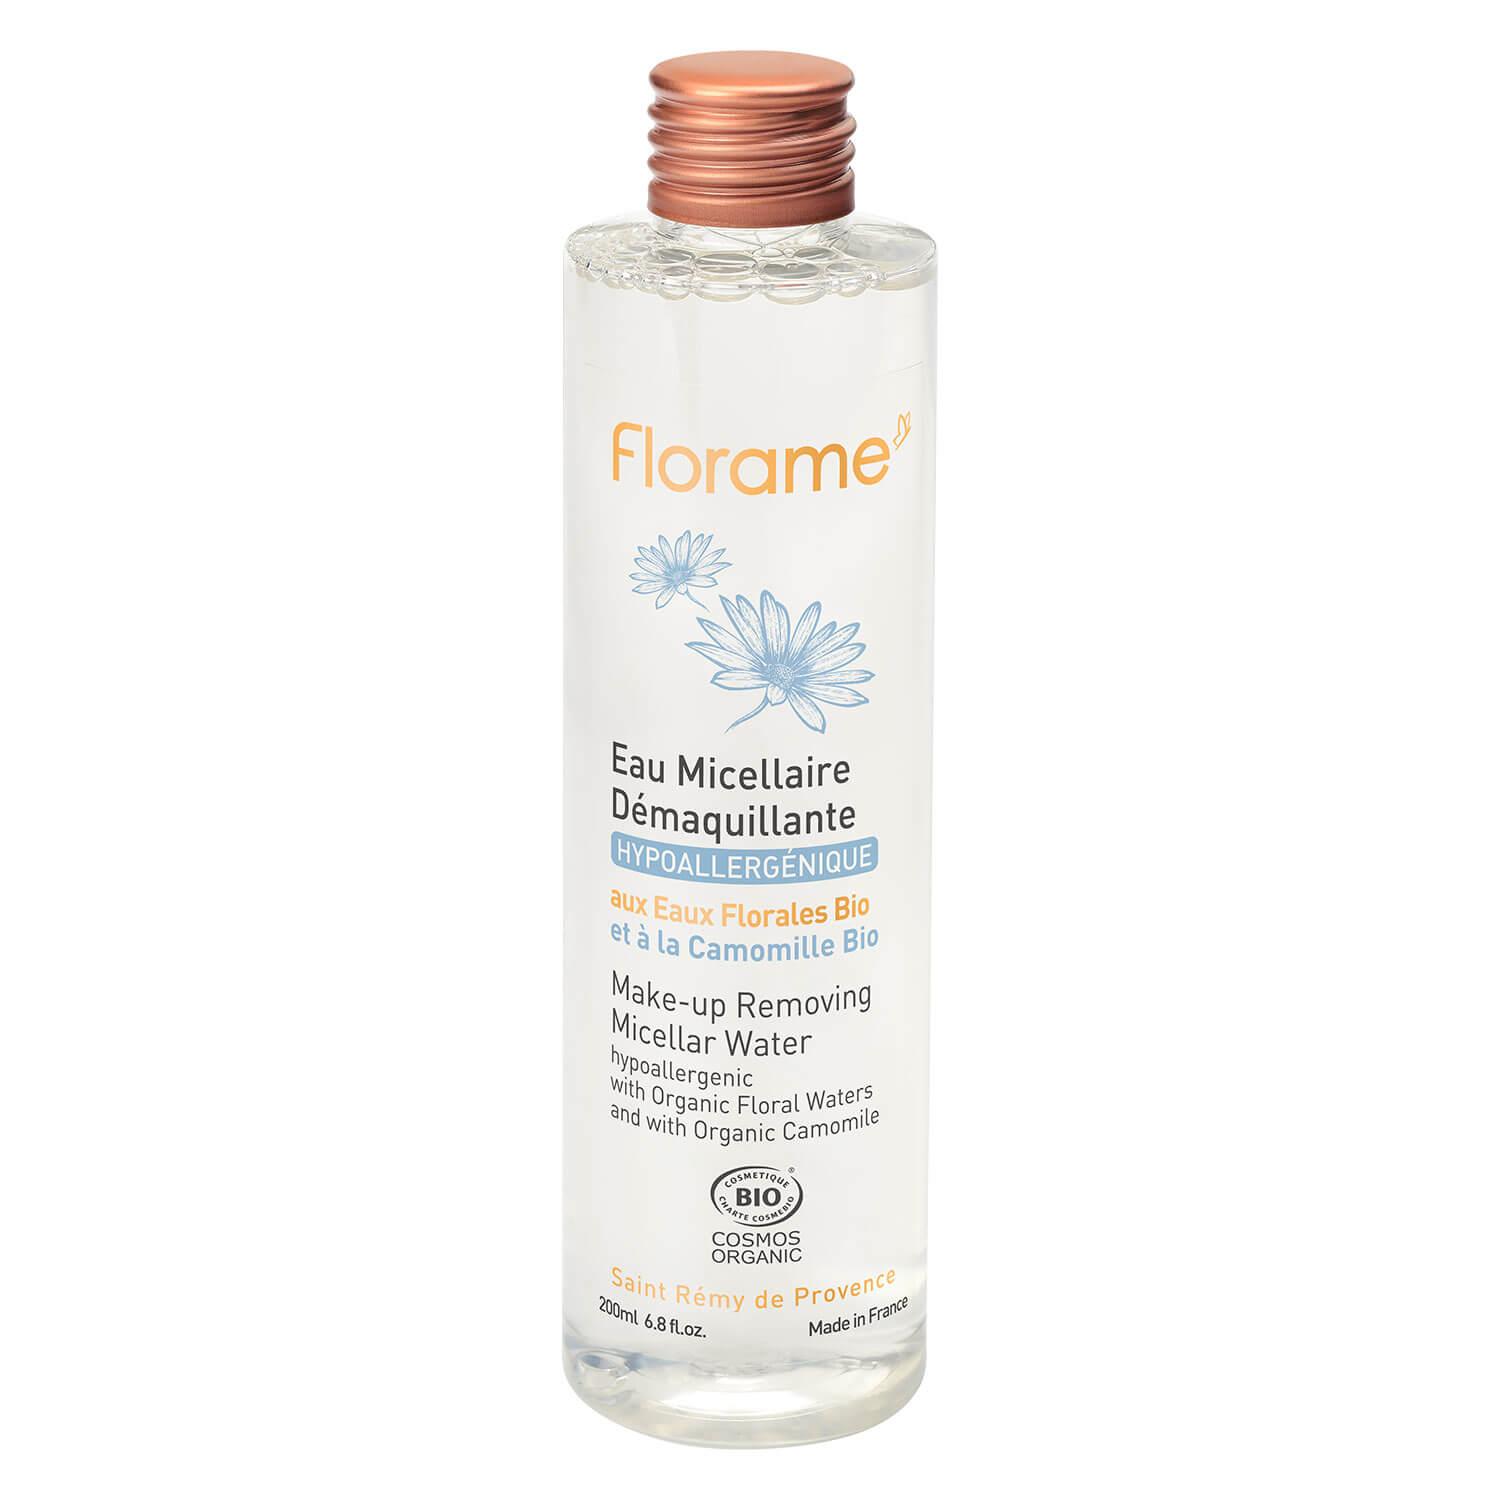 Florame - Micellar Water Make-up Removing